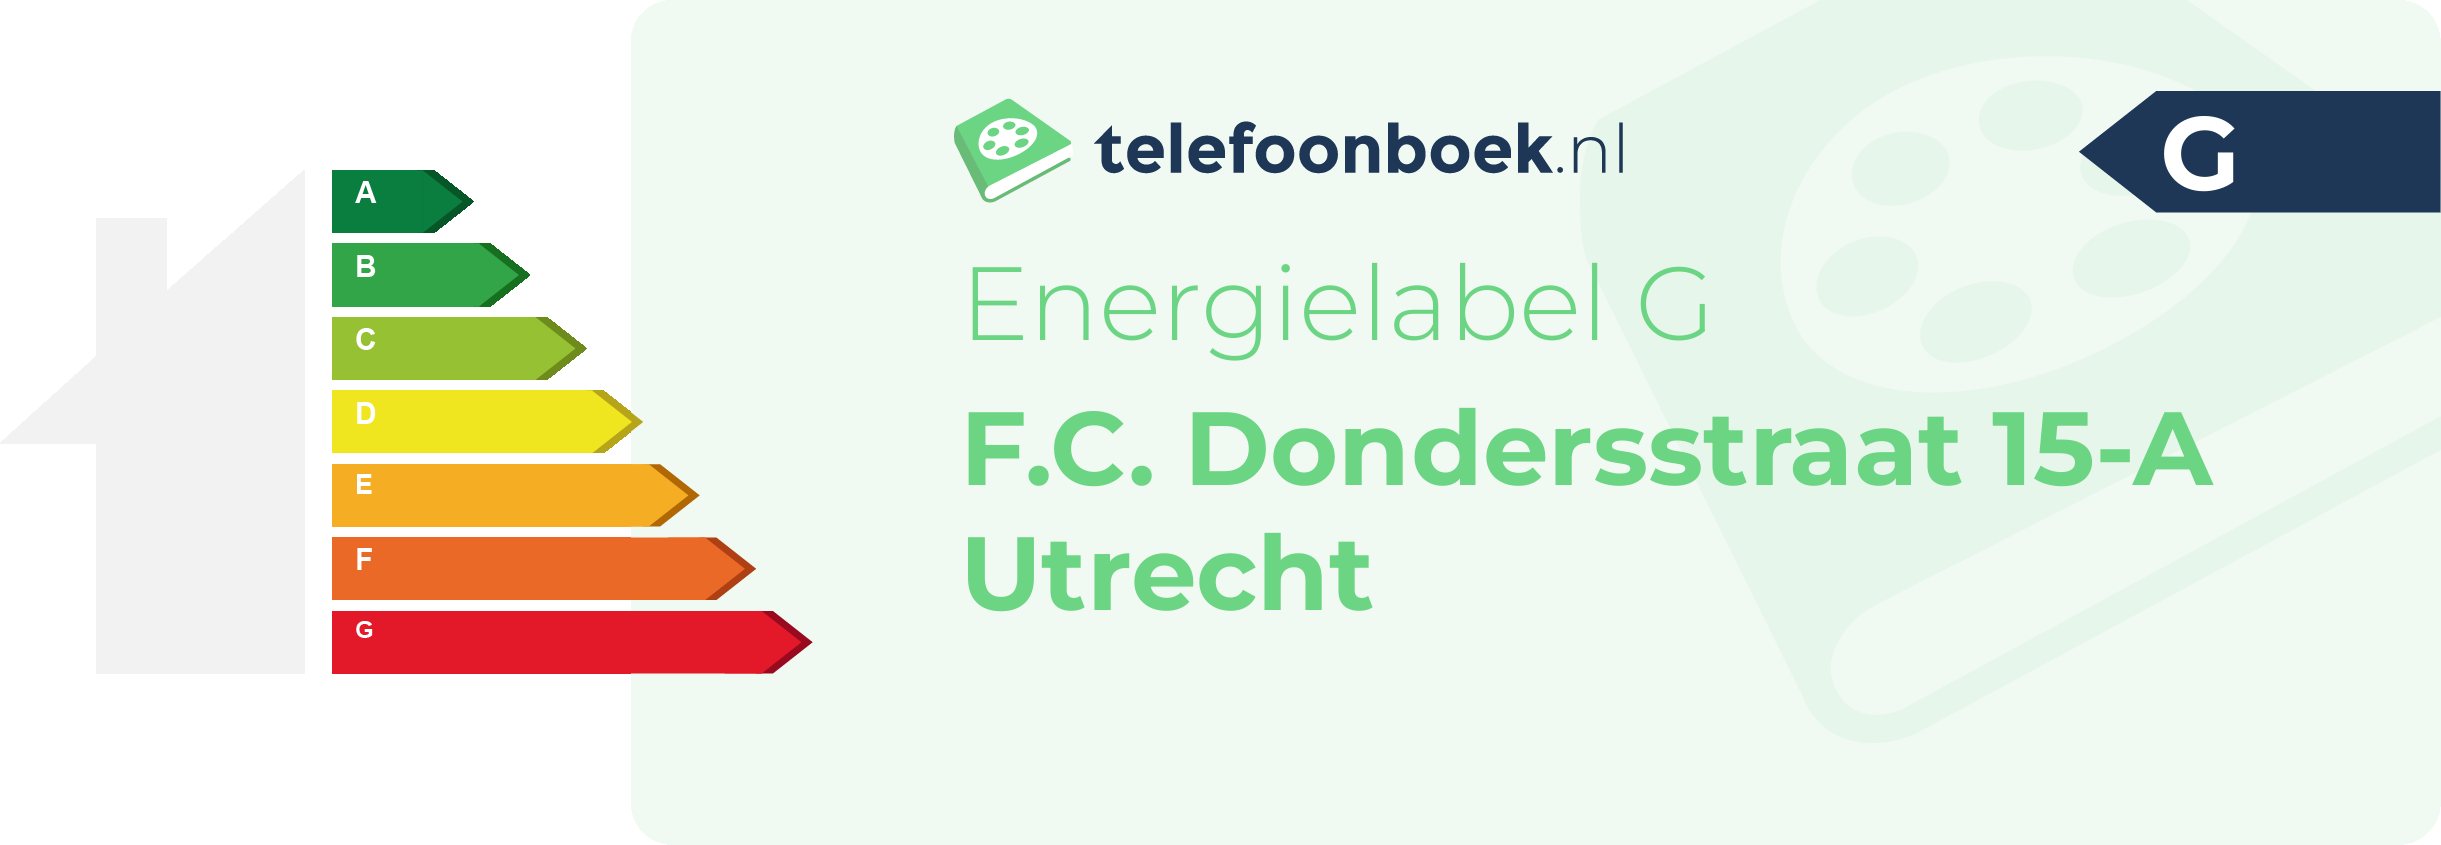 Energielabel F.C. Dondersstraat 15-A Utrecht